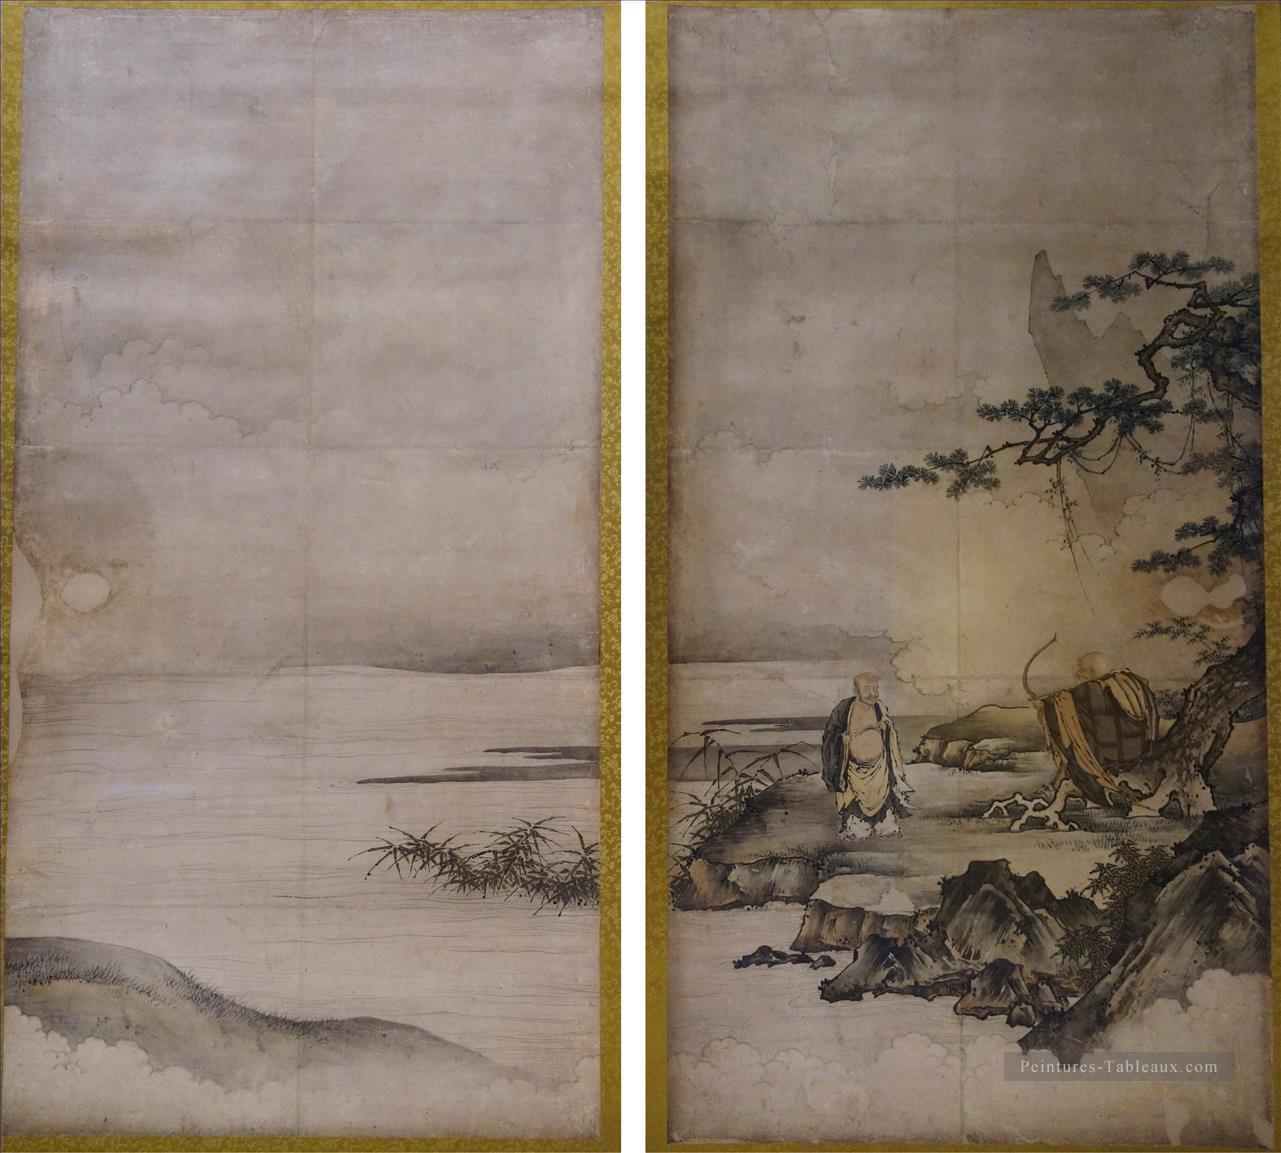 peinture sur l’éveil Zen Sanping Baring sa poitrine et Shigong étirement son arc attribué à Kano Motonobu Japanese. JPG Peintures à l'huile